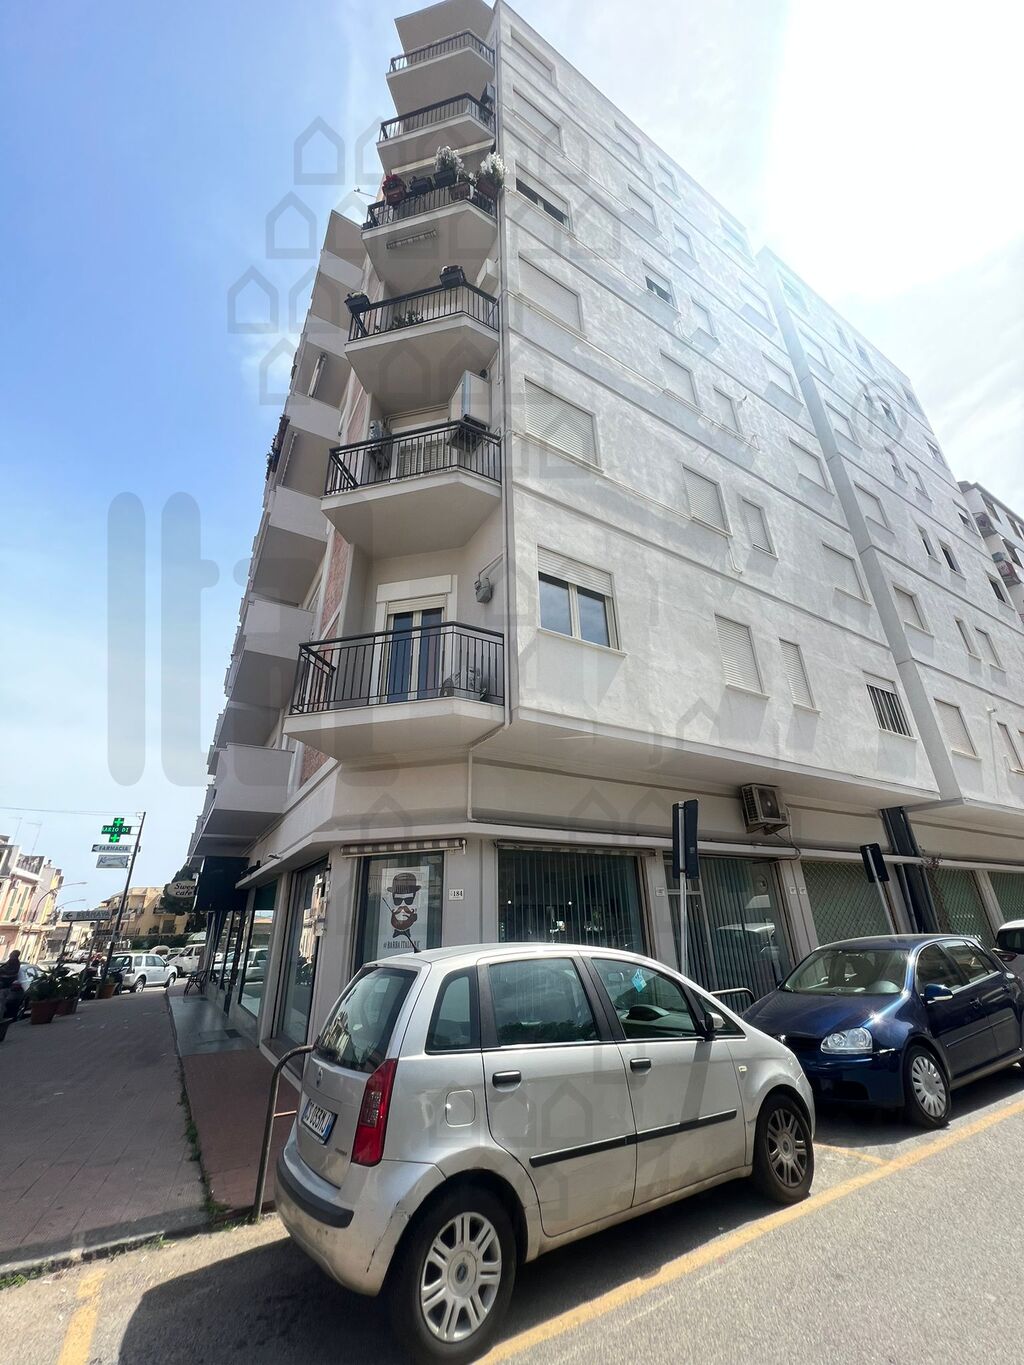 Appartamento a Villafranca Tirrena in via nazionale - 01, Vendita Appartamento Trilocale in Via Nazionale